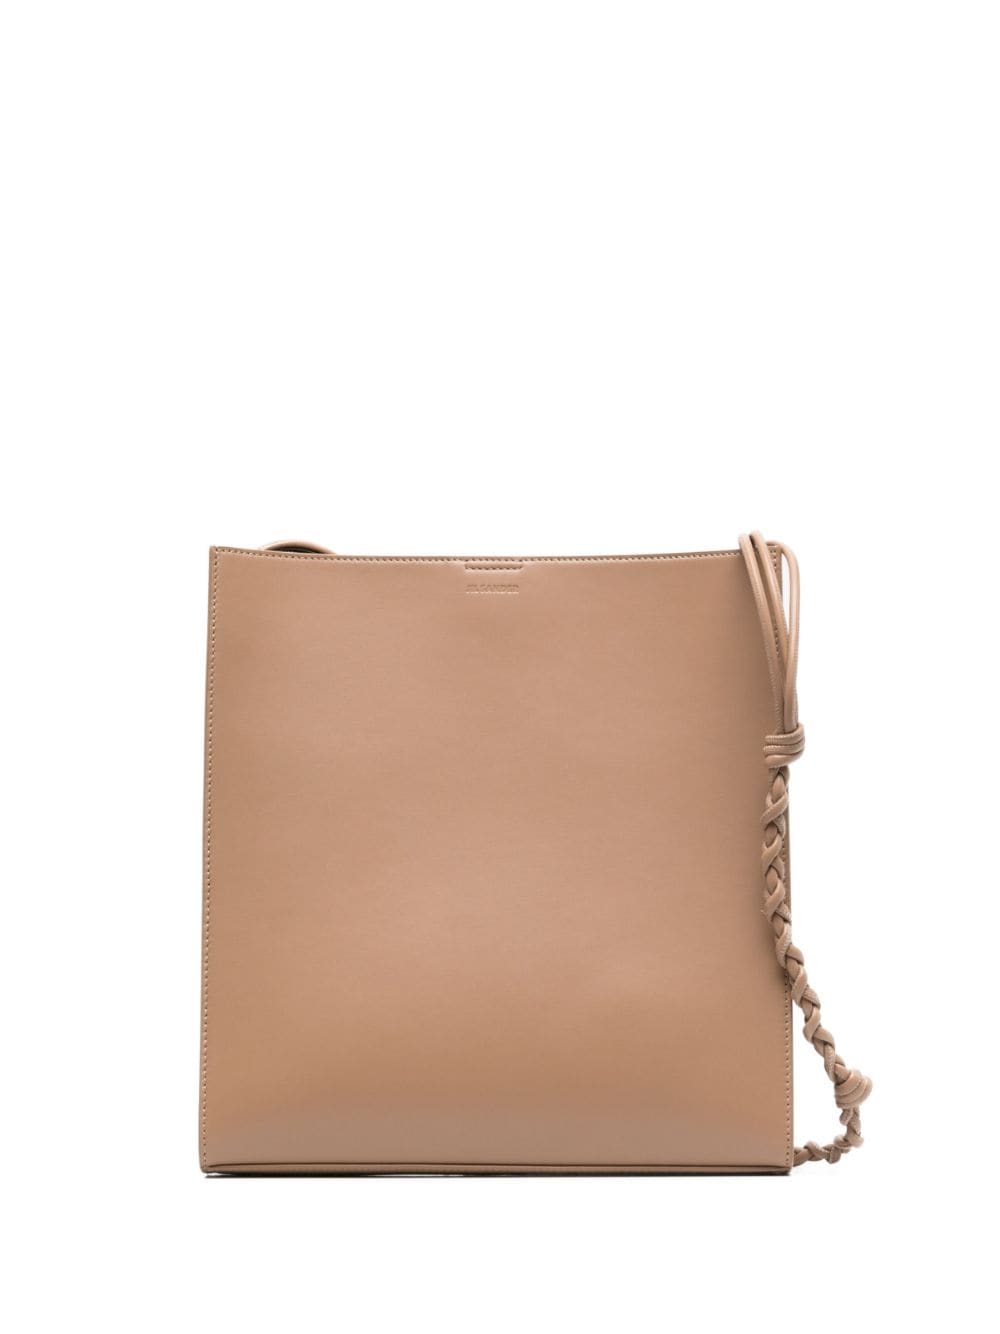 Image 1 of Jil Sander medium Tangle leather shoulder bag